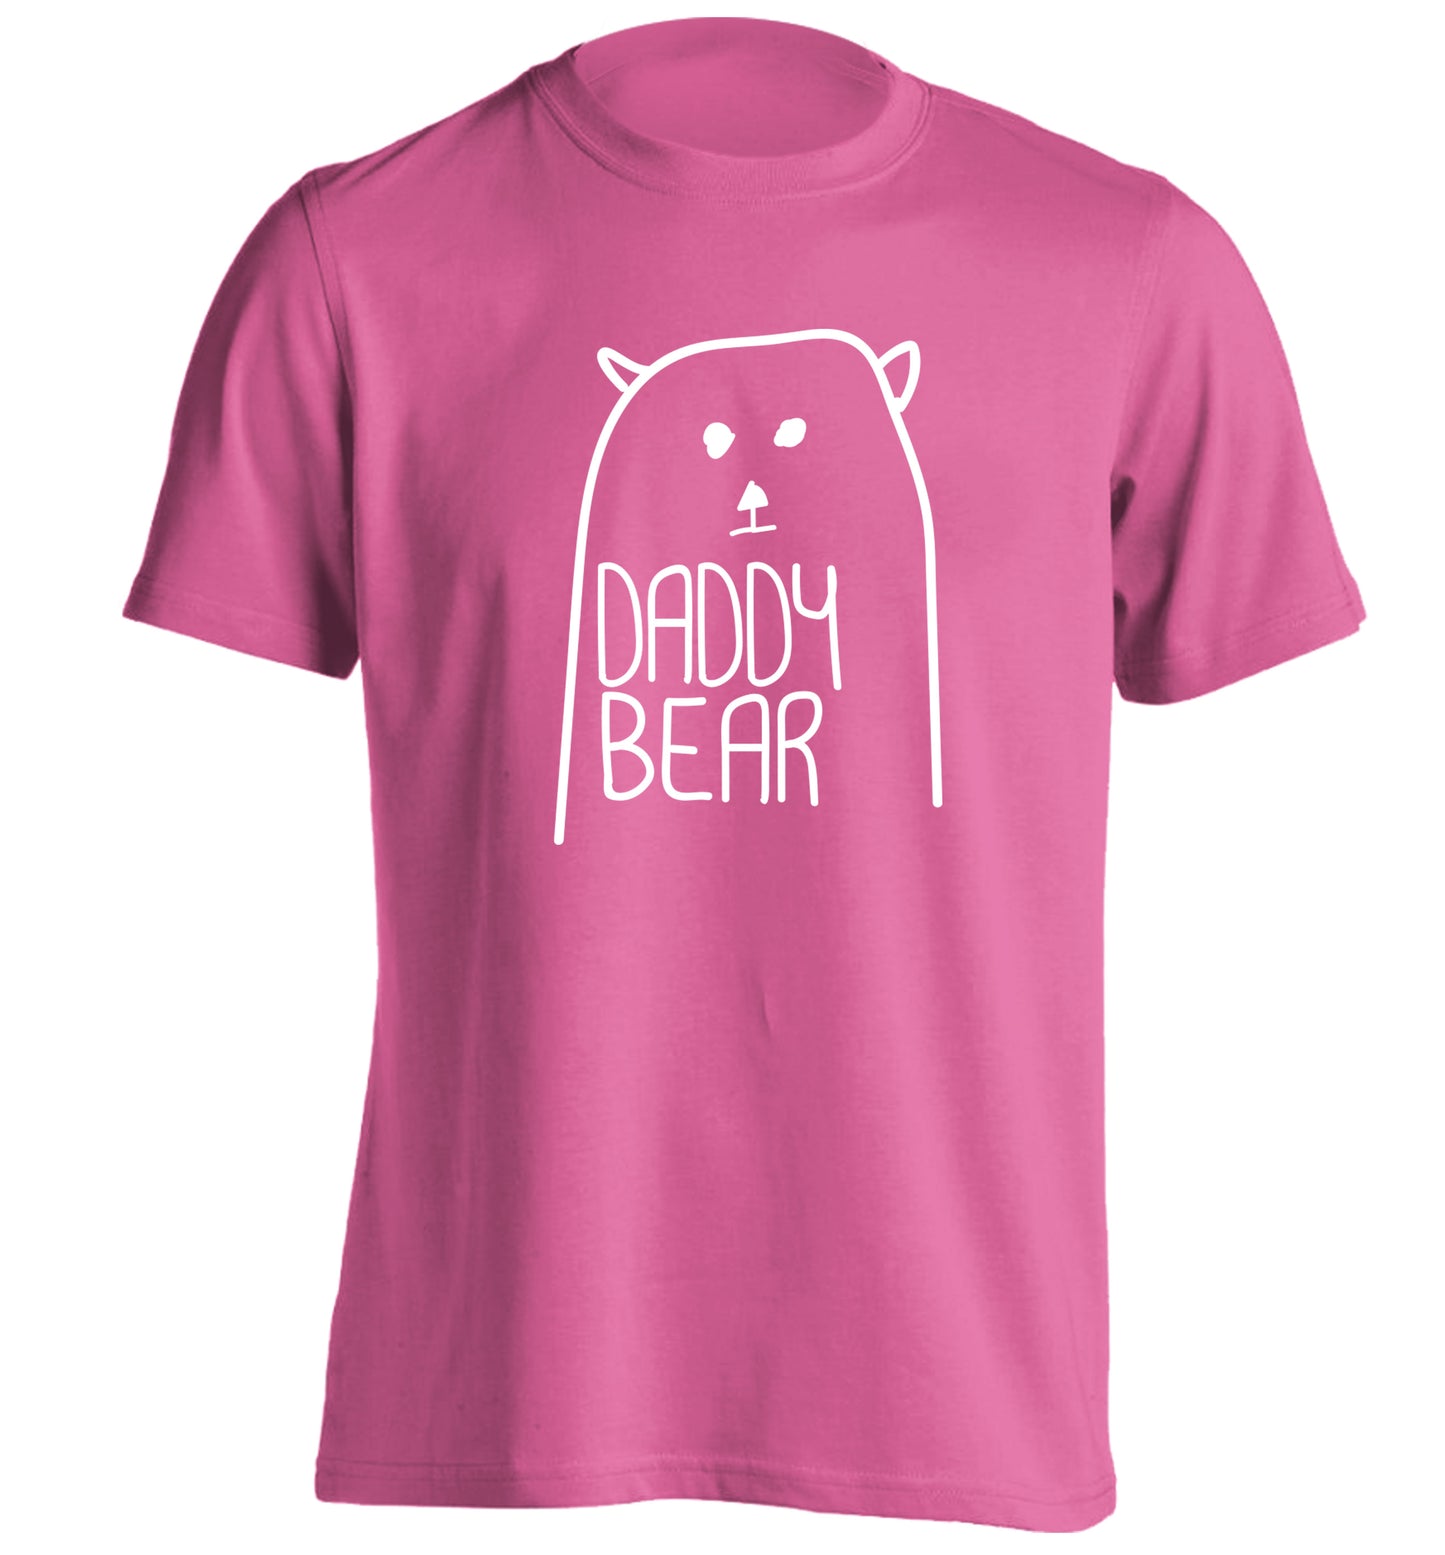 Daddy bear adults unisex pink Tshirt 2XL